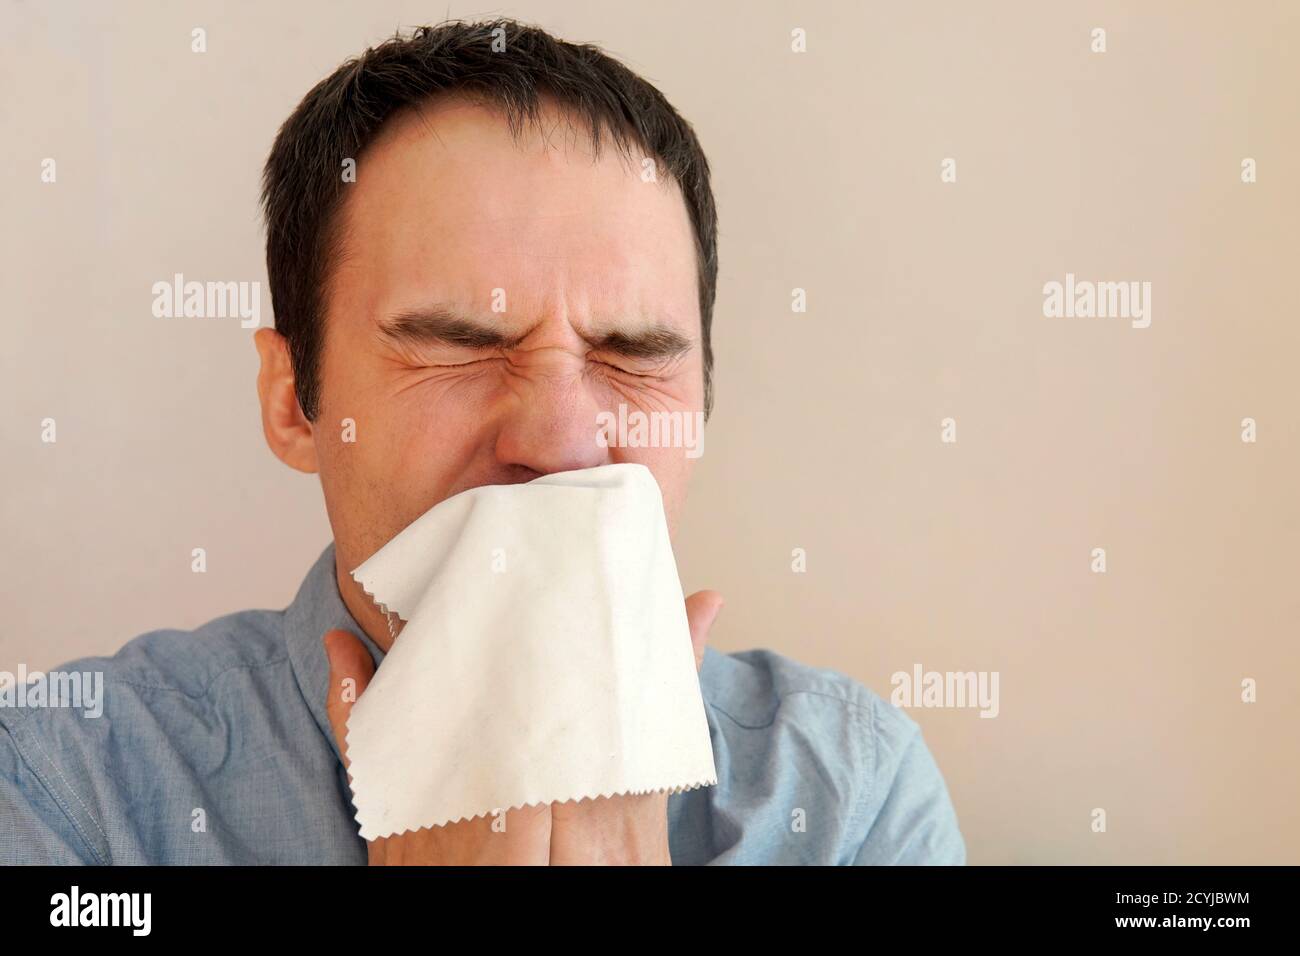 Der Kerl niest in ein Taschentuch Nahaufnahme. Die Ausbreitung von Mikroben und Bakterien. Junger Mann, der seine Nase bläst Stockfoto